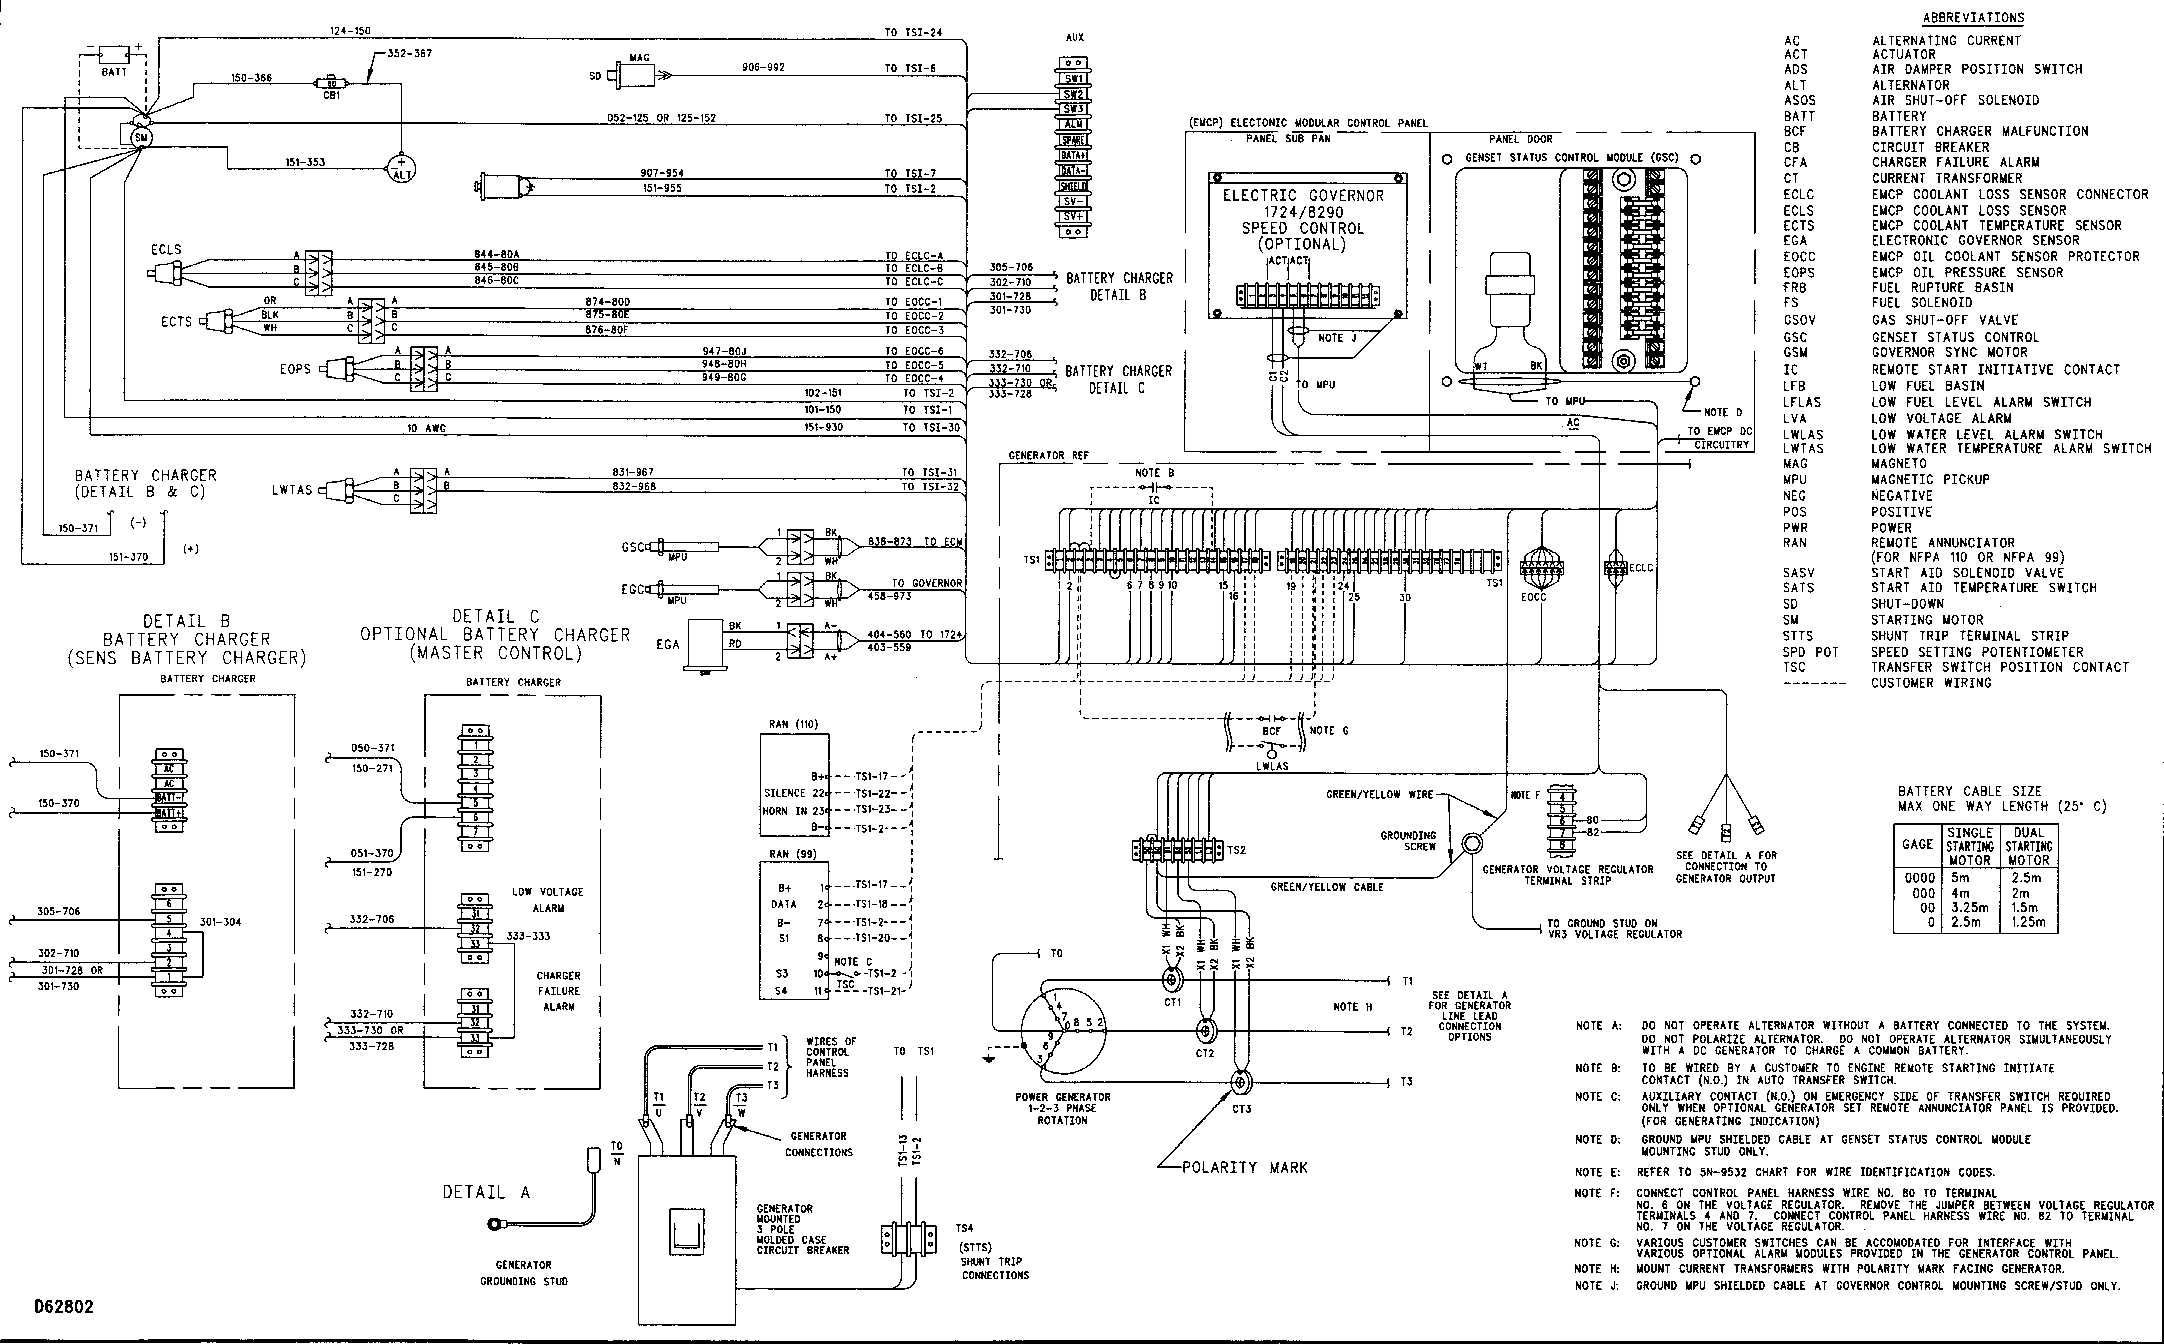 Cat 289c2 Ac Wiring Diagram